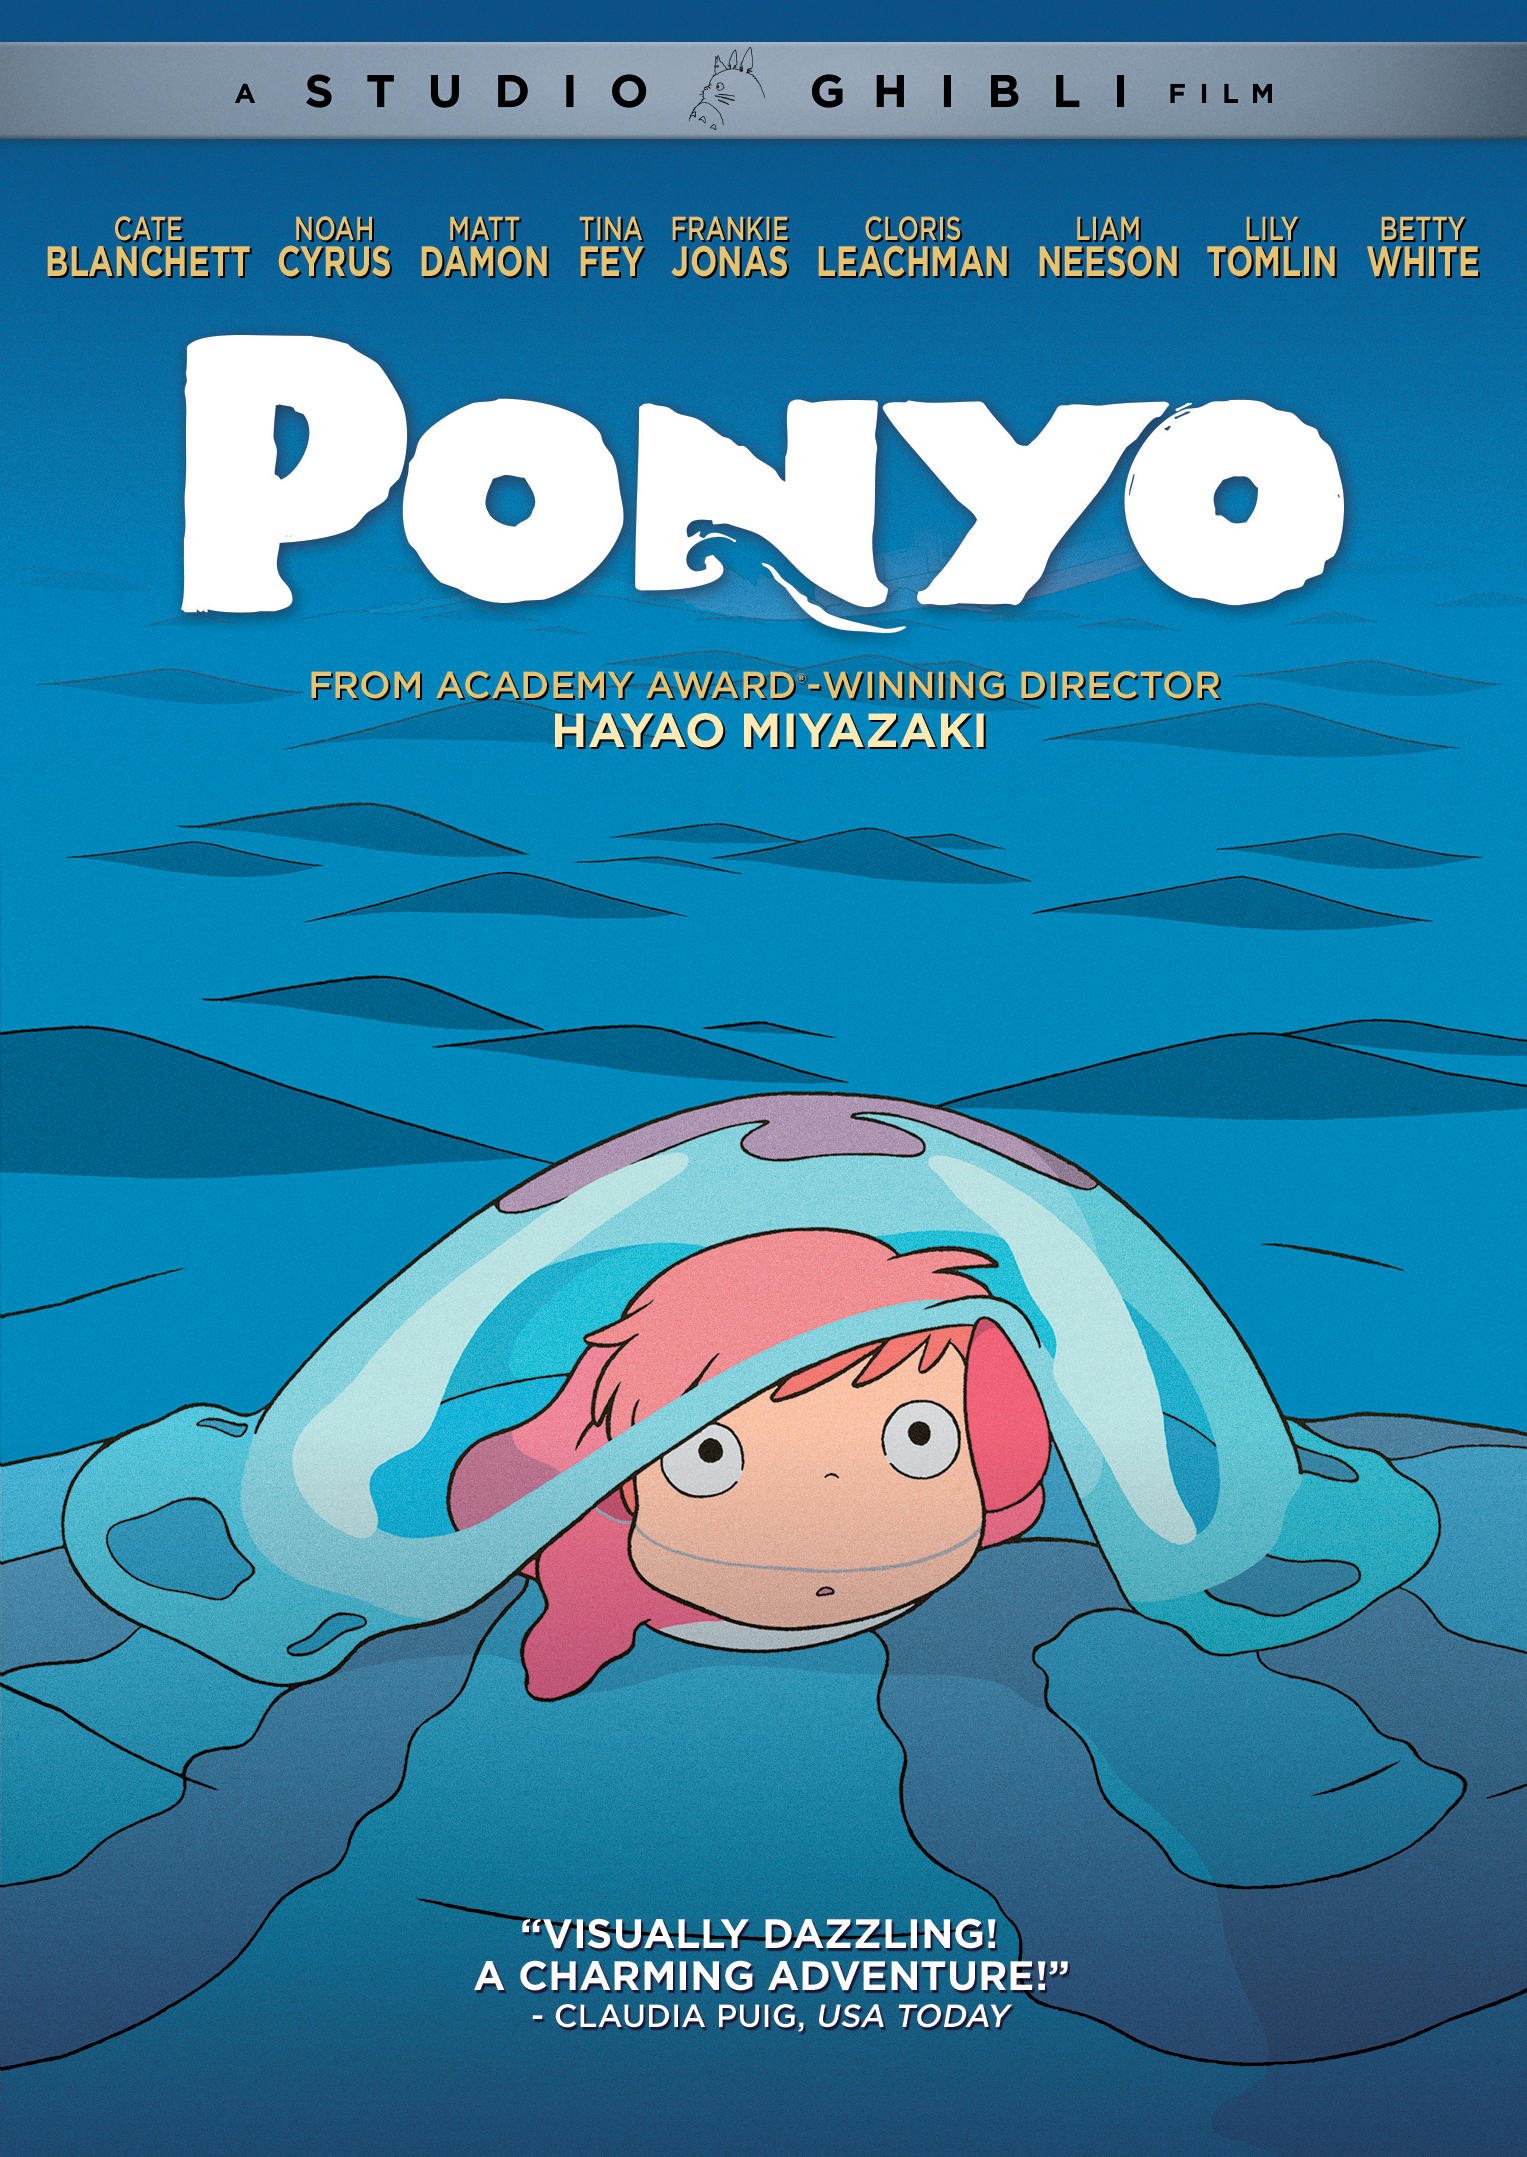 Ponyo [DVD] [2008] - Best Buy